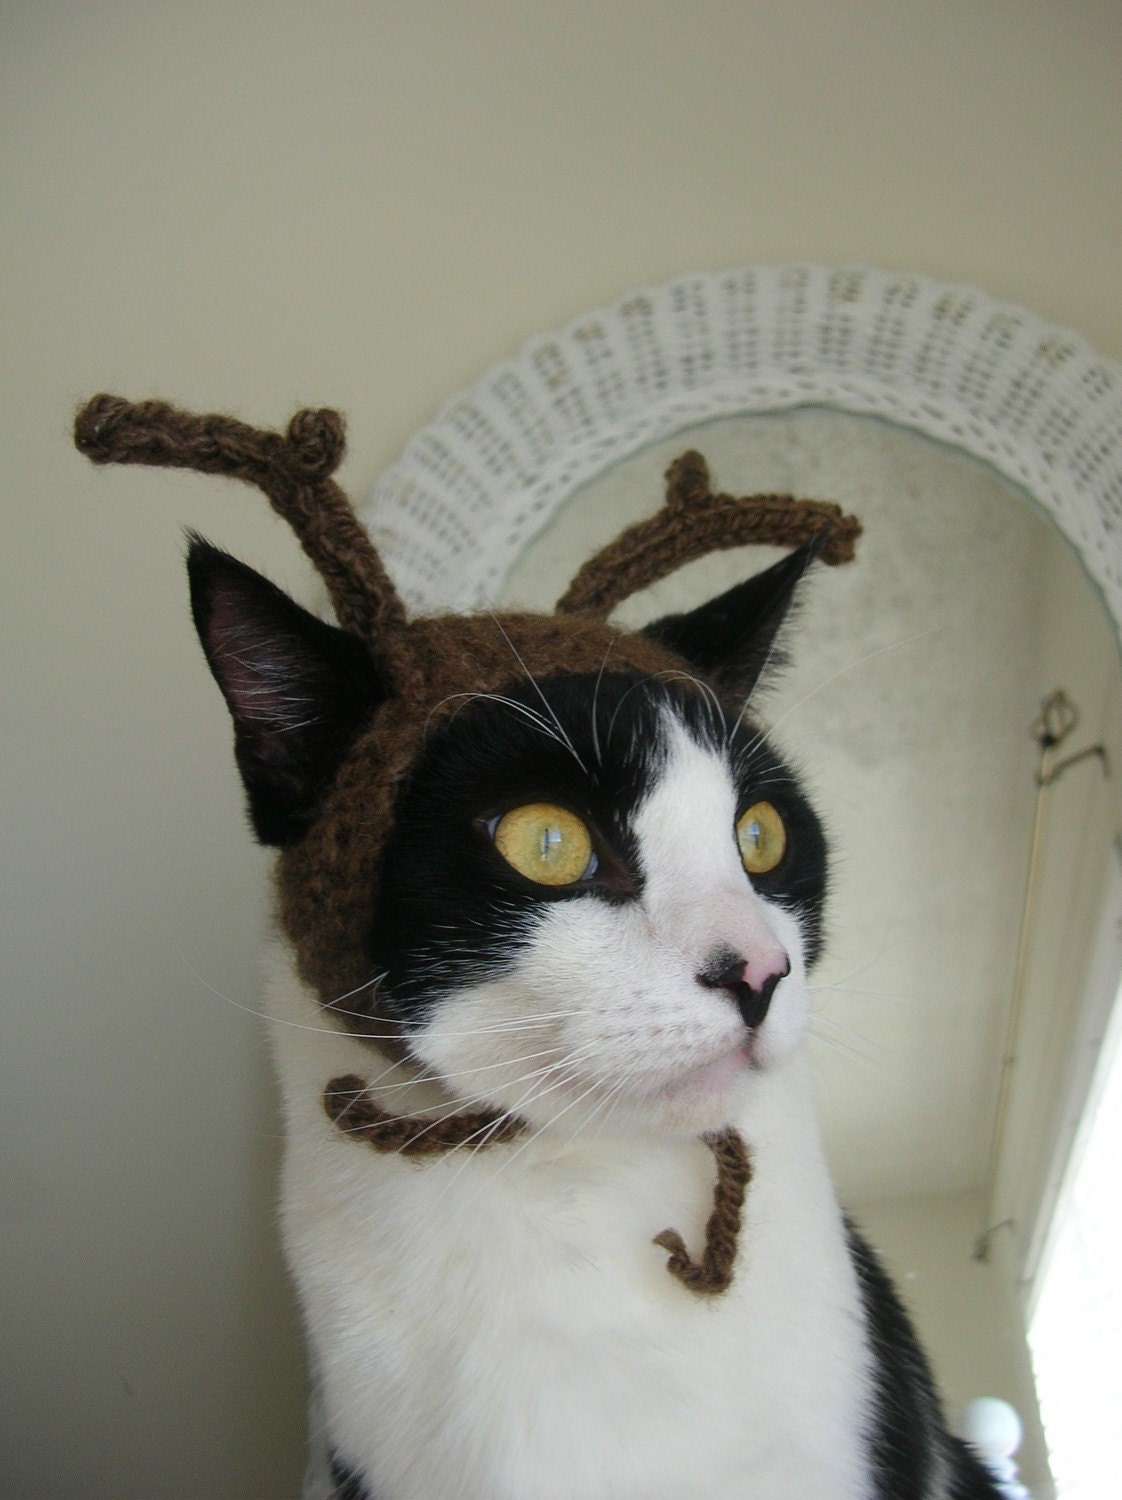 The Reindeer Cat Hat